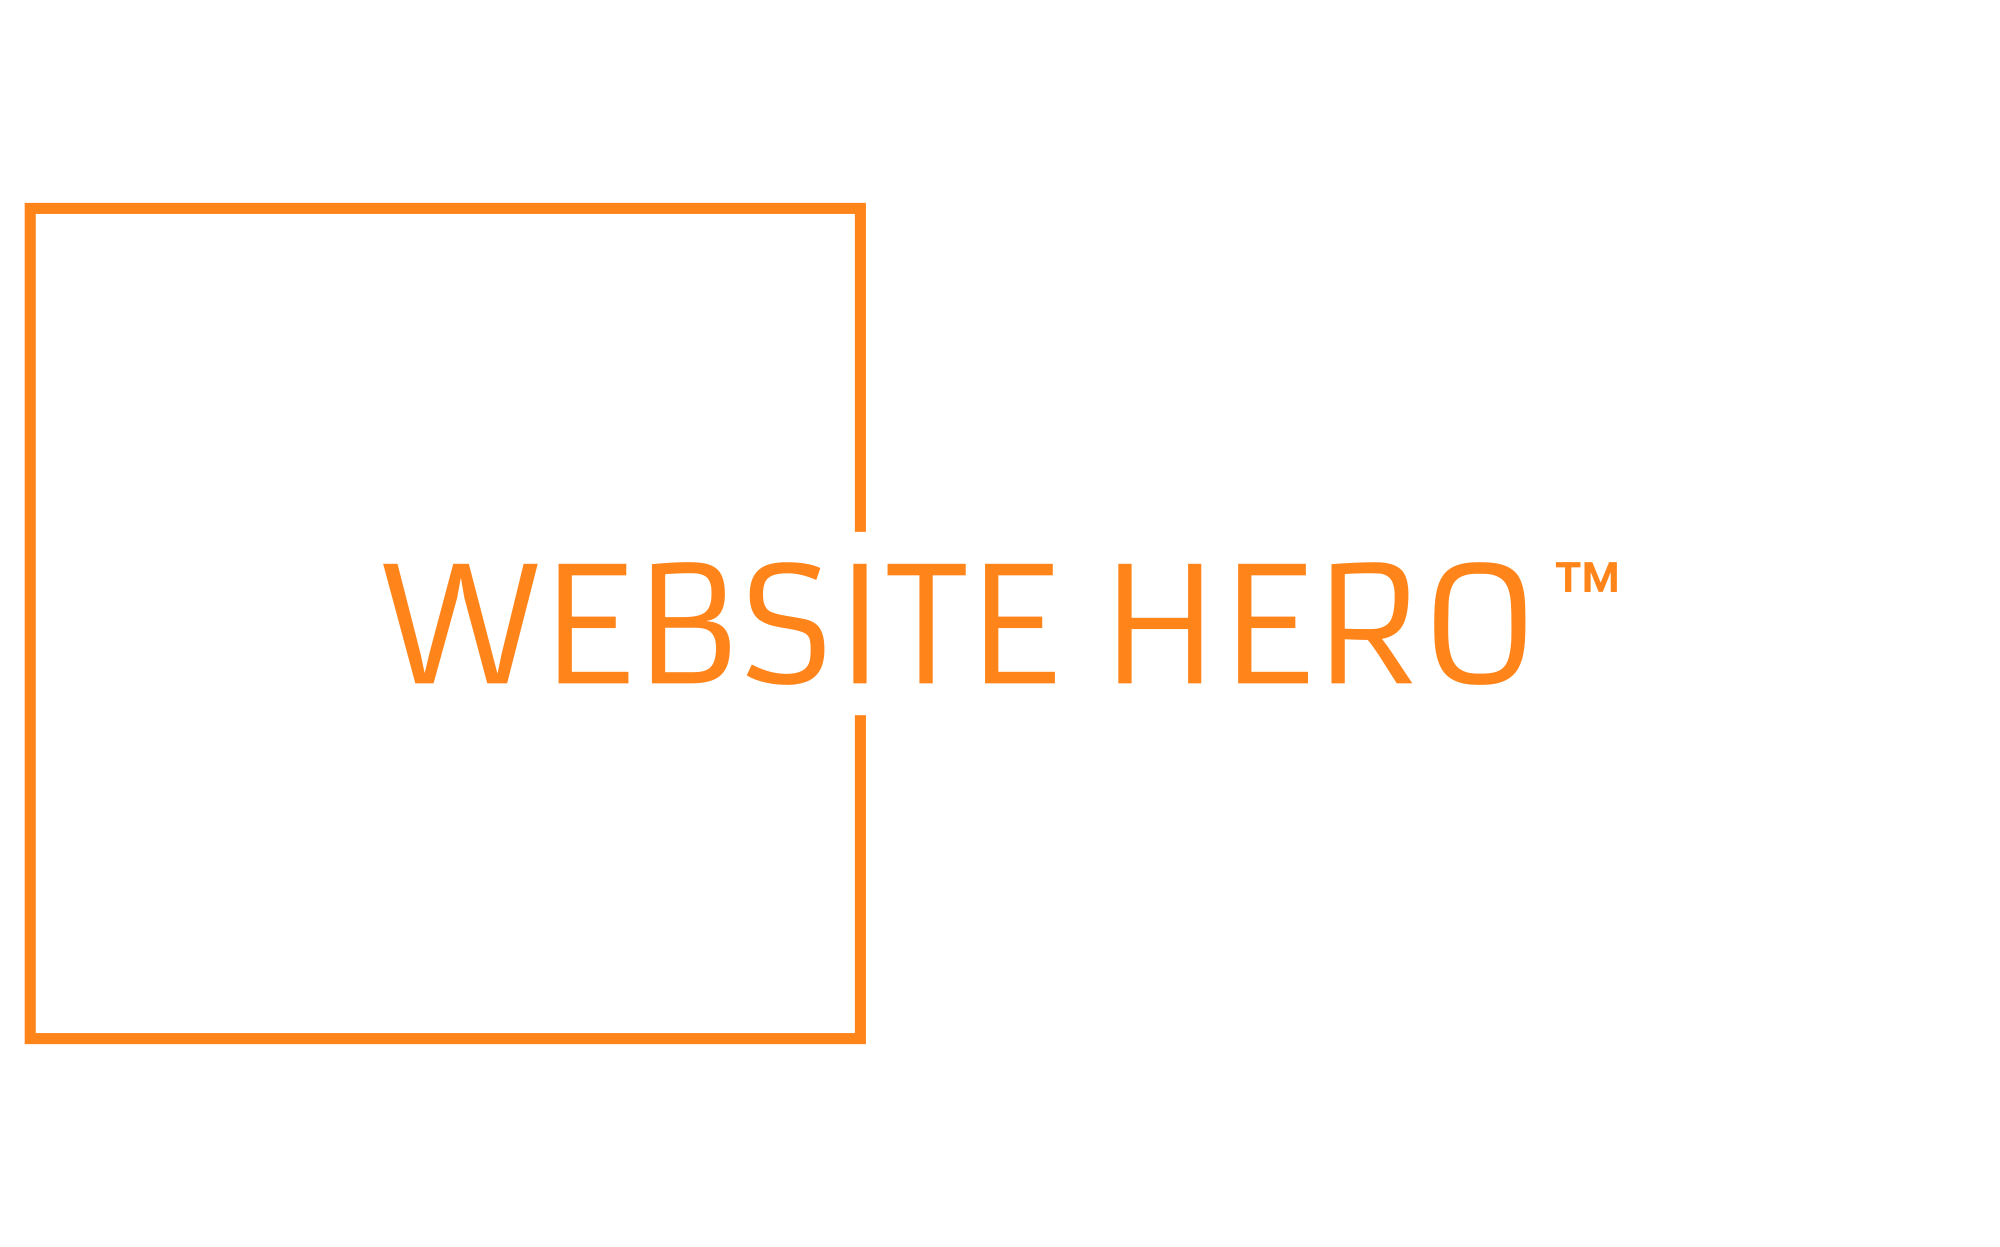 WEBSITE HERO